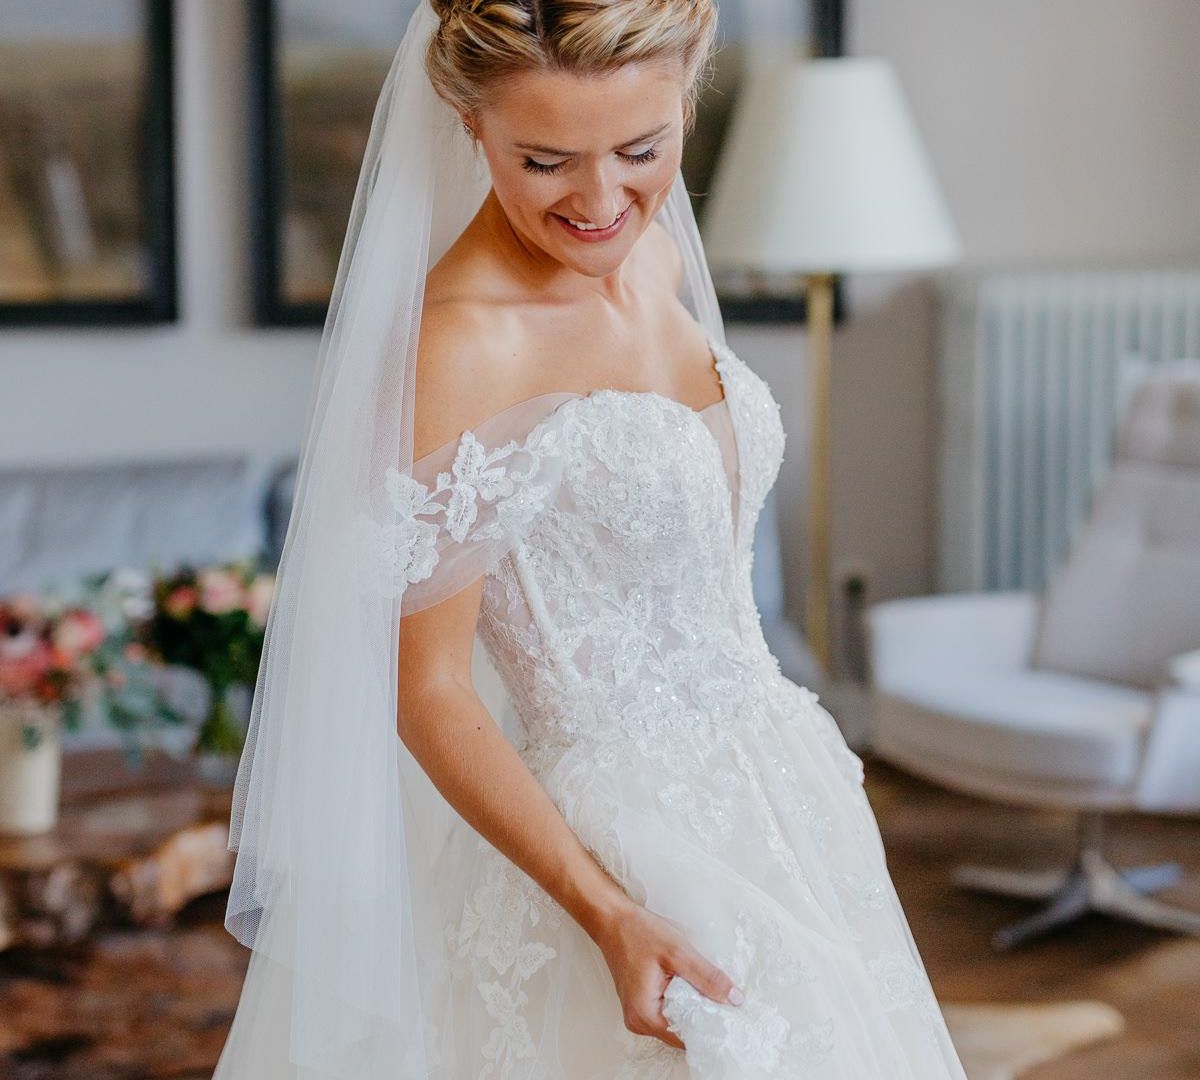 Eine wunderschöne Braut in einem weißen Hochzeitskleid.